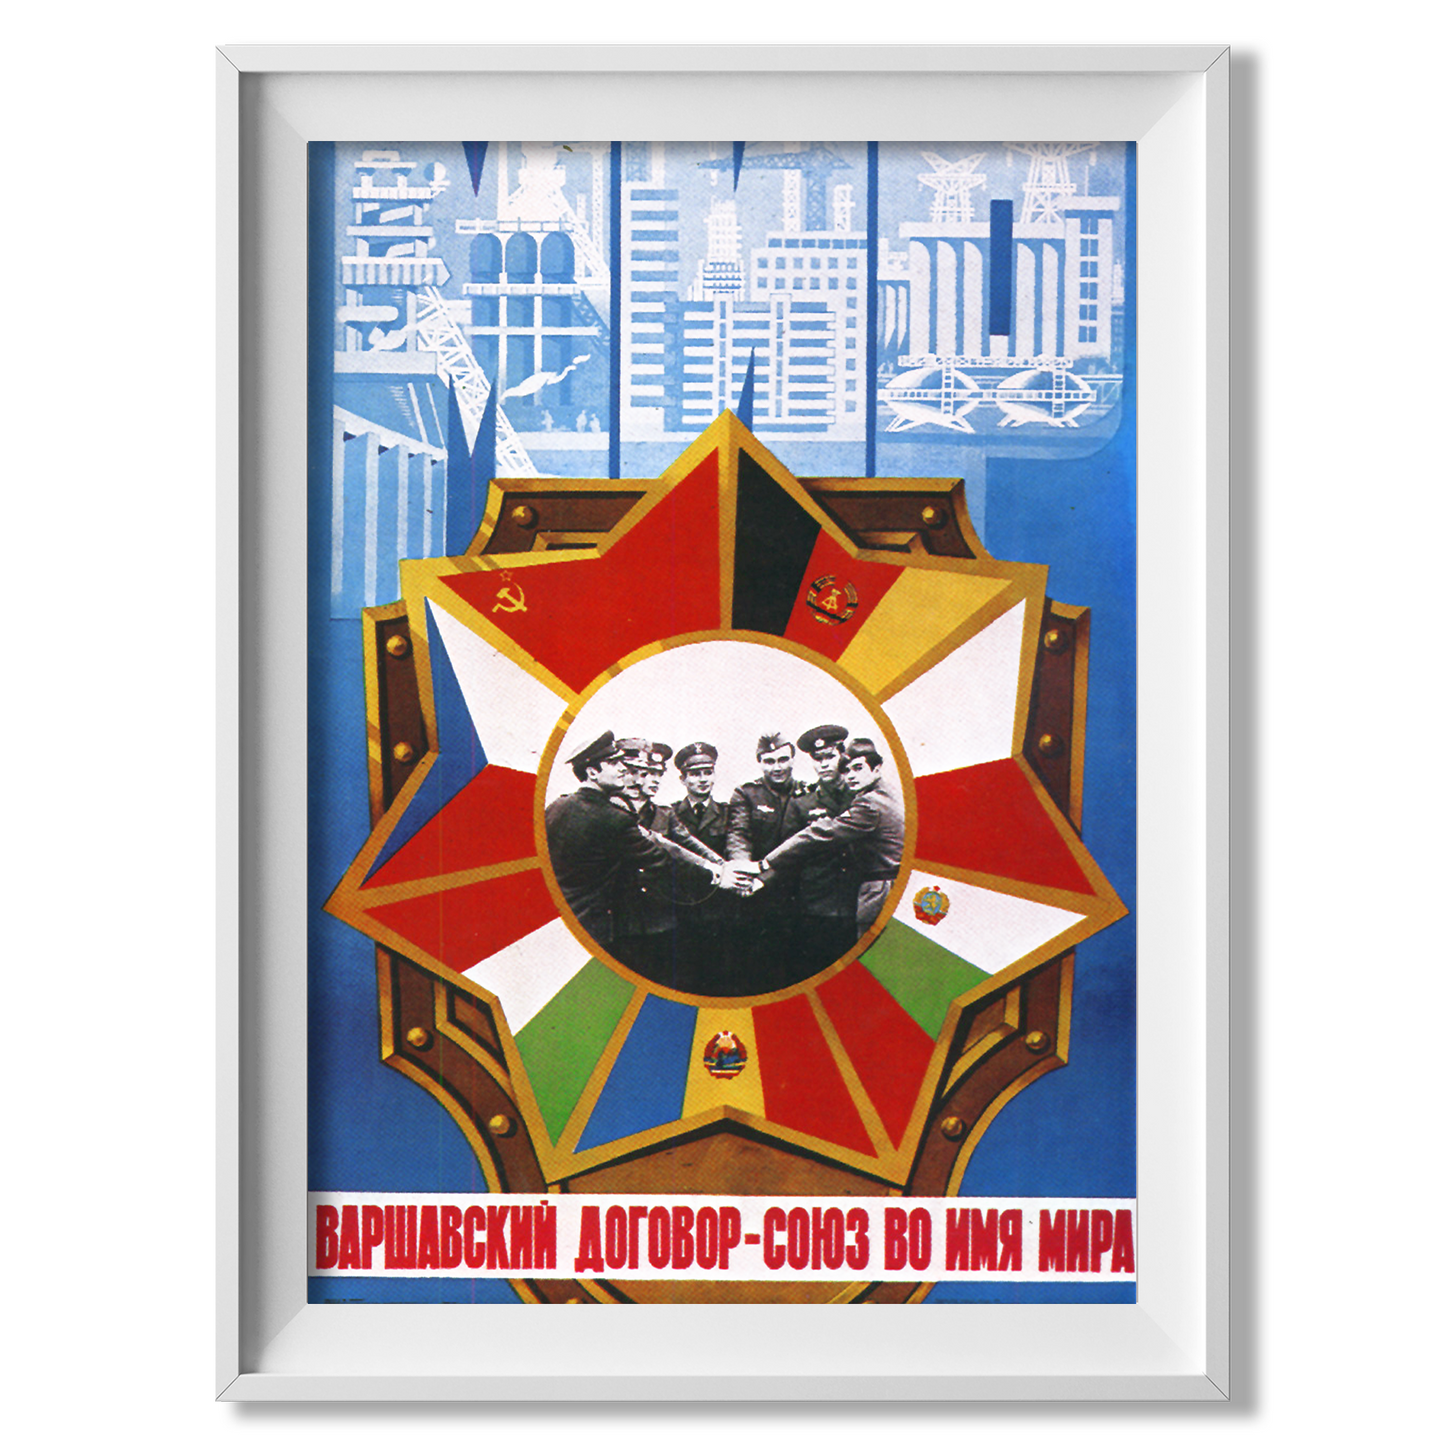 Warsaw Pact Propaganda Poster